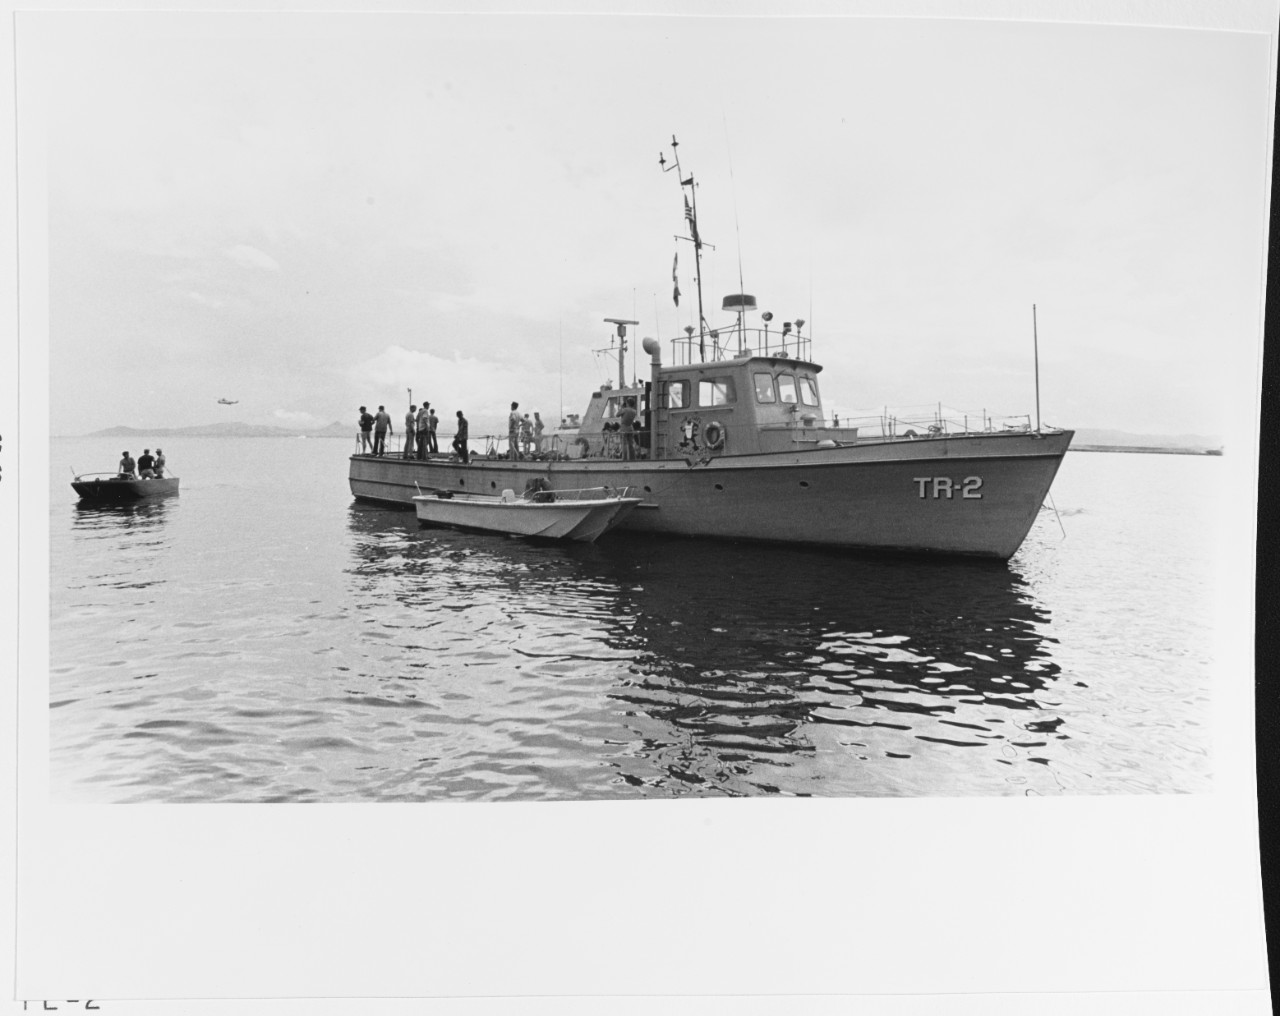 Torpedo retriever boat TR-2